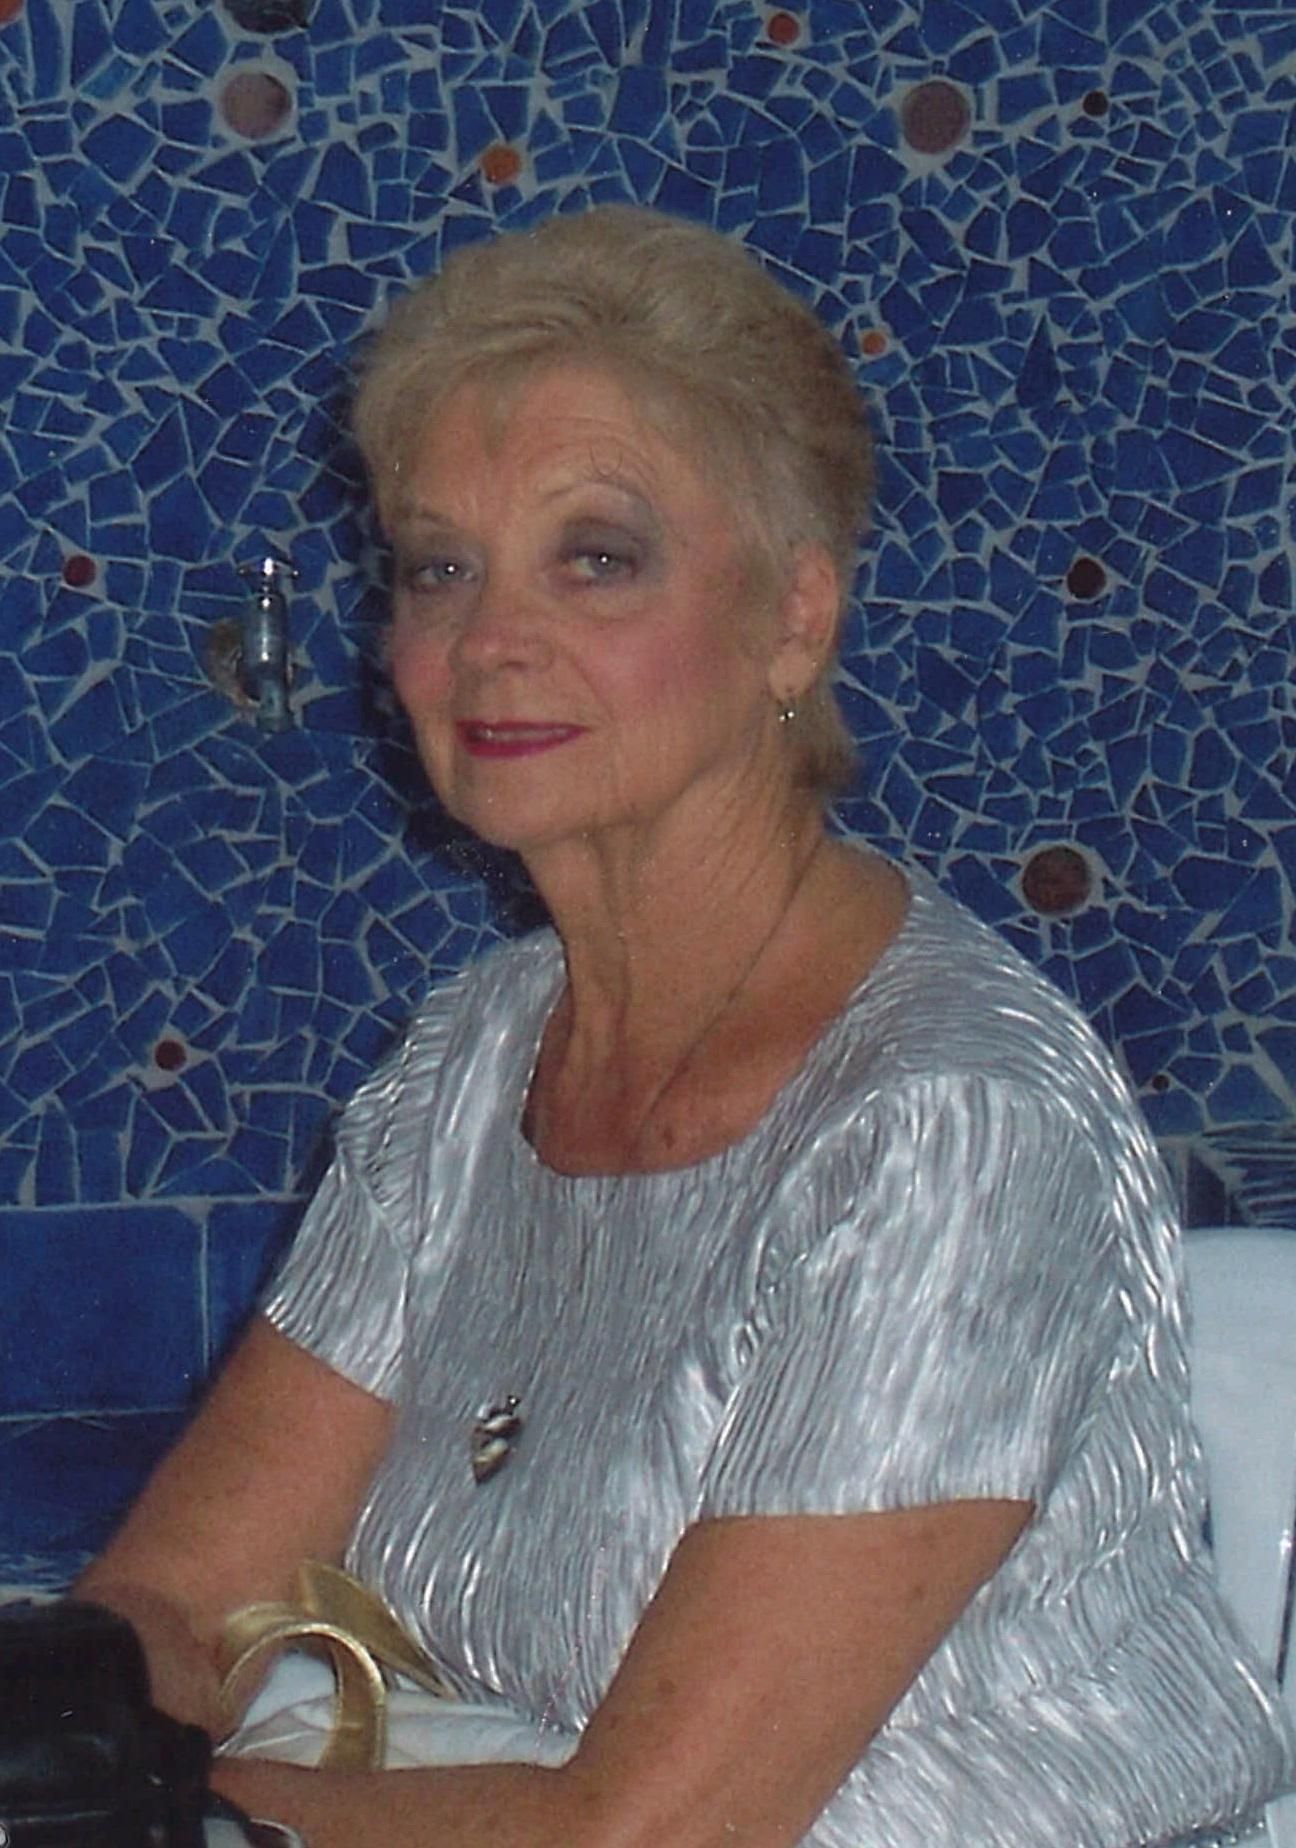 Margaret Lawson